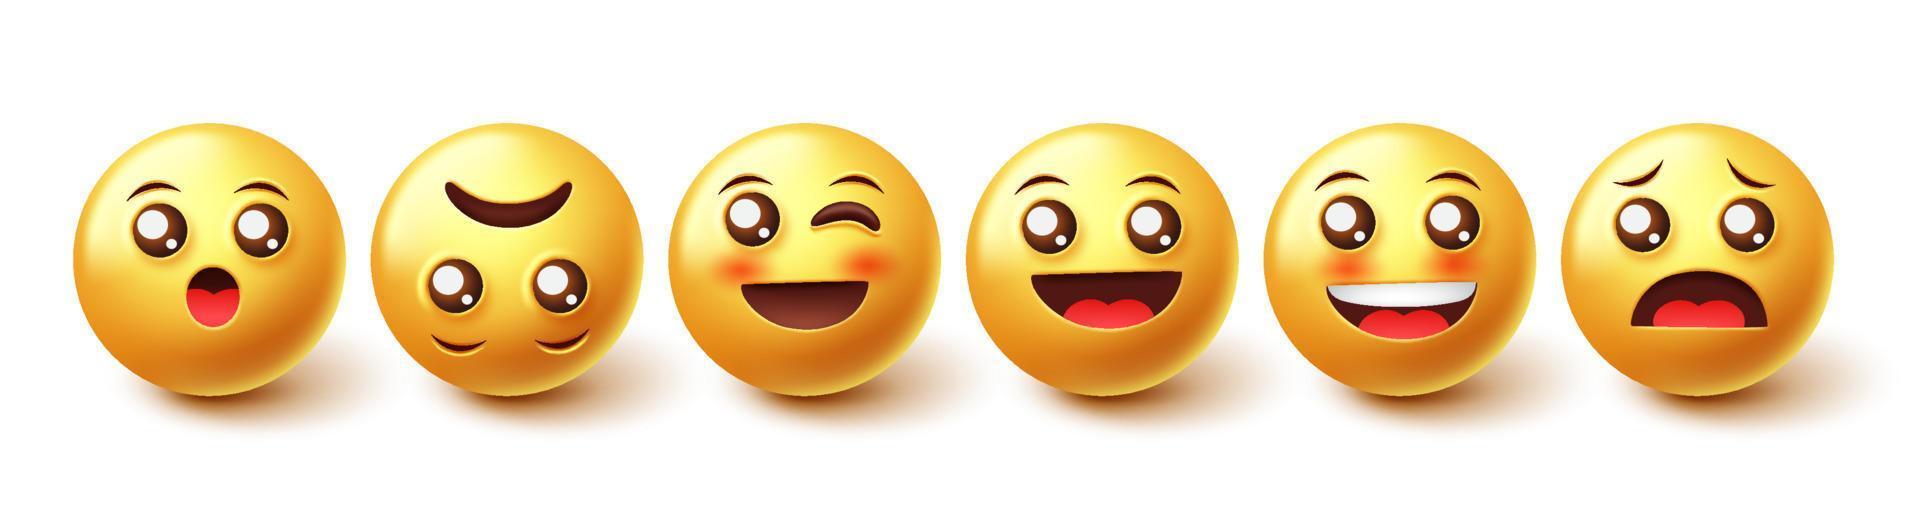 jeu de vecteurs de caractères emojis. émoticônes emoji de conception graphique 3d dans la collection de personnages souriants, rougissants et surpris isolés sur fond blanc. illustration vectorielle. vecteur